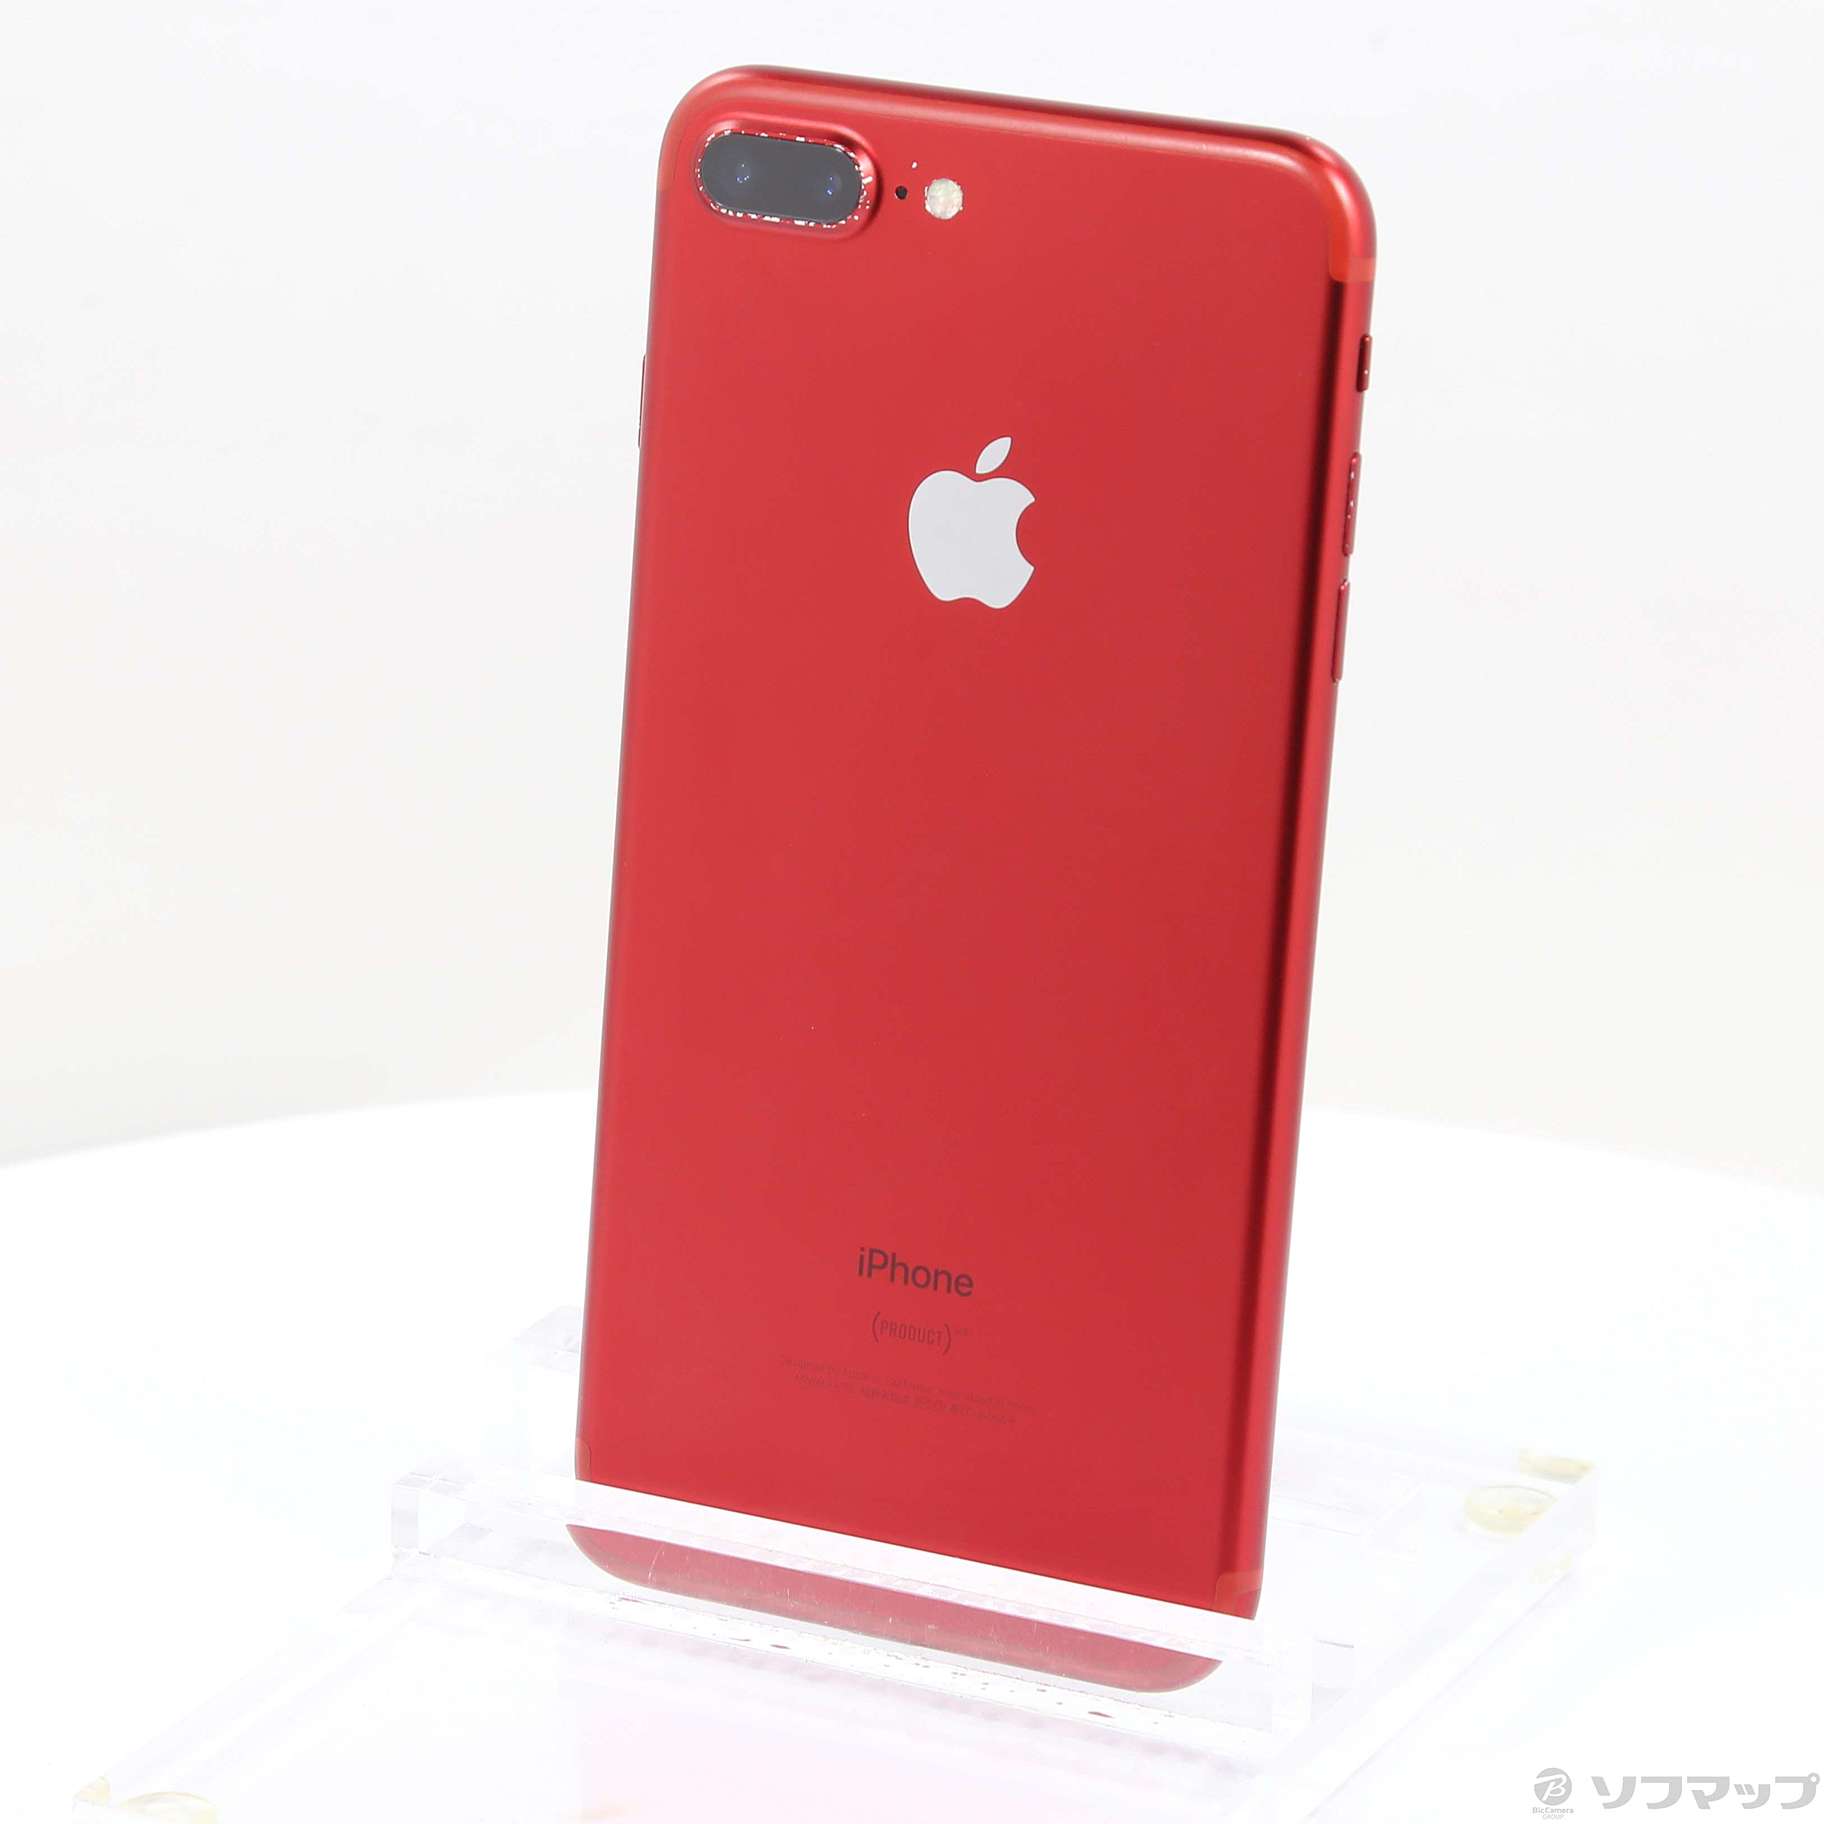 iPhone 7 Plus Red 128 GB SIMフリー - スマートフォン本体